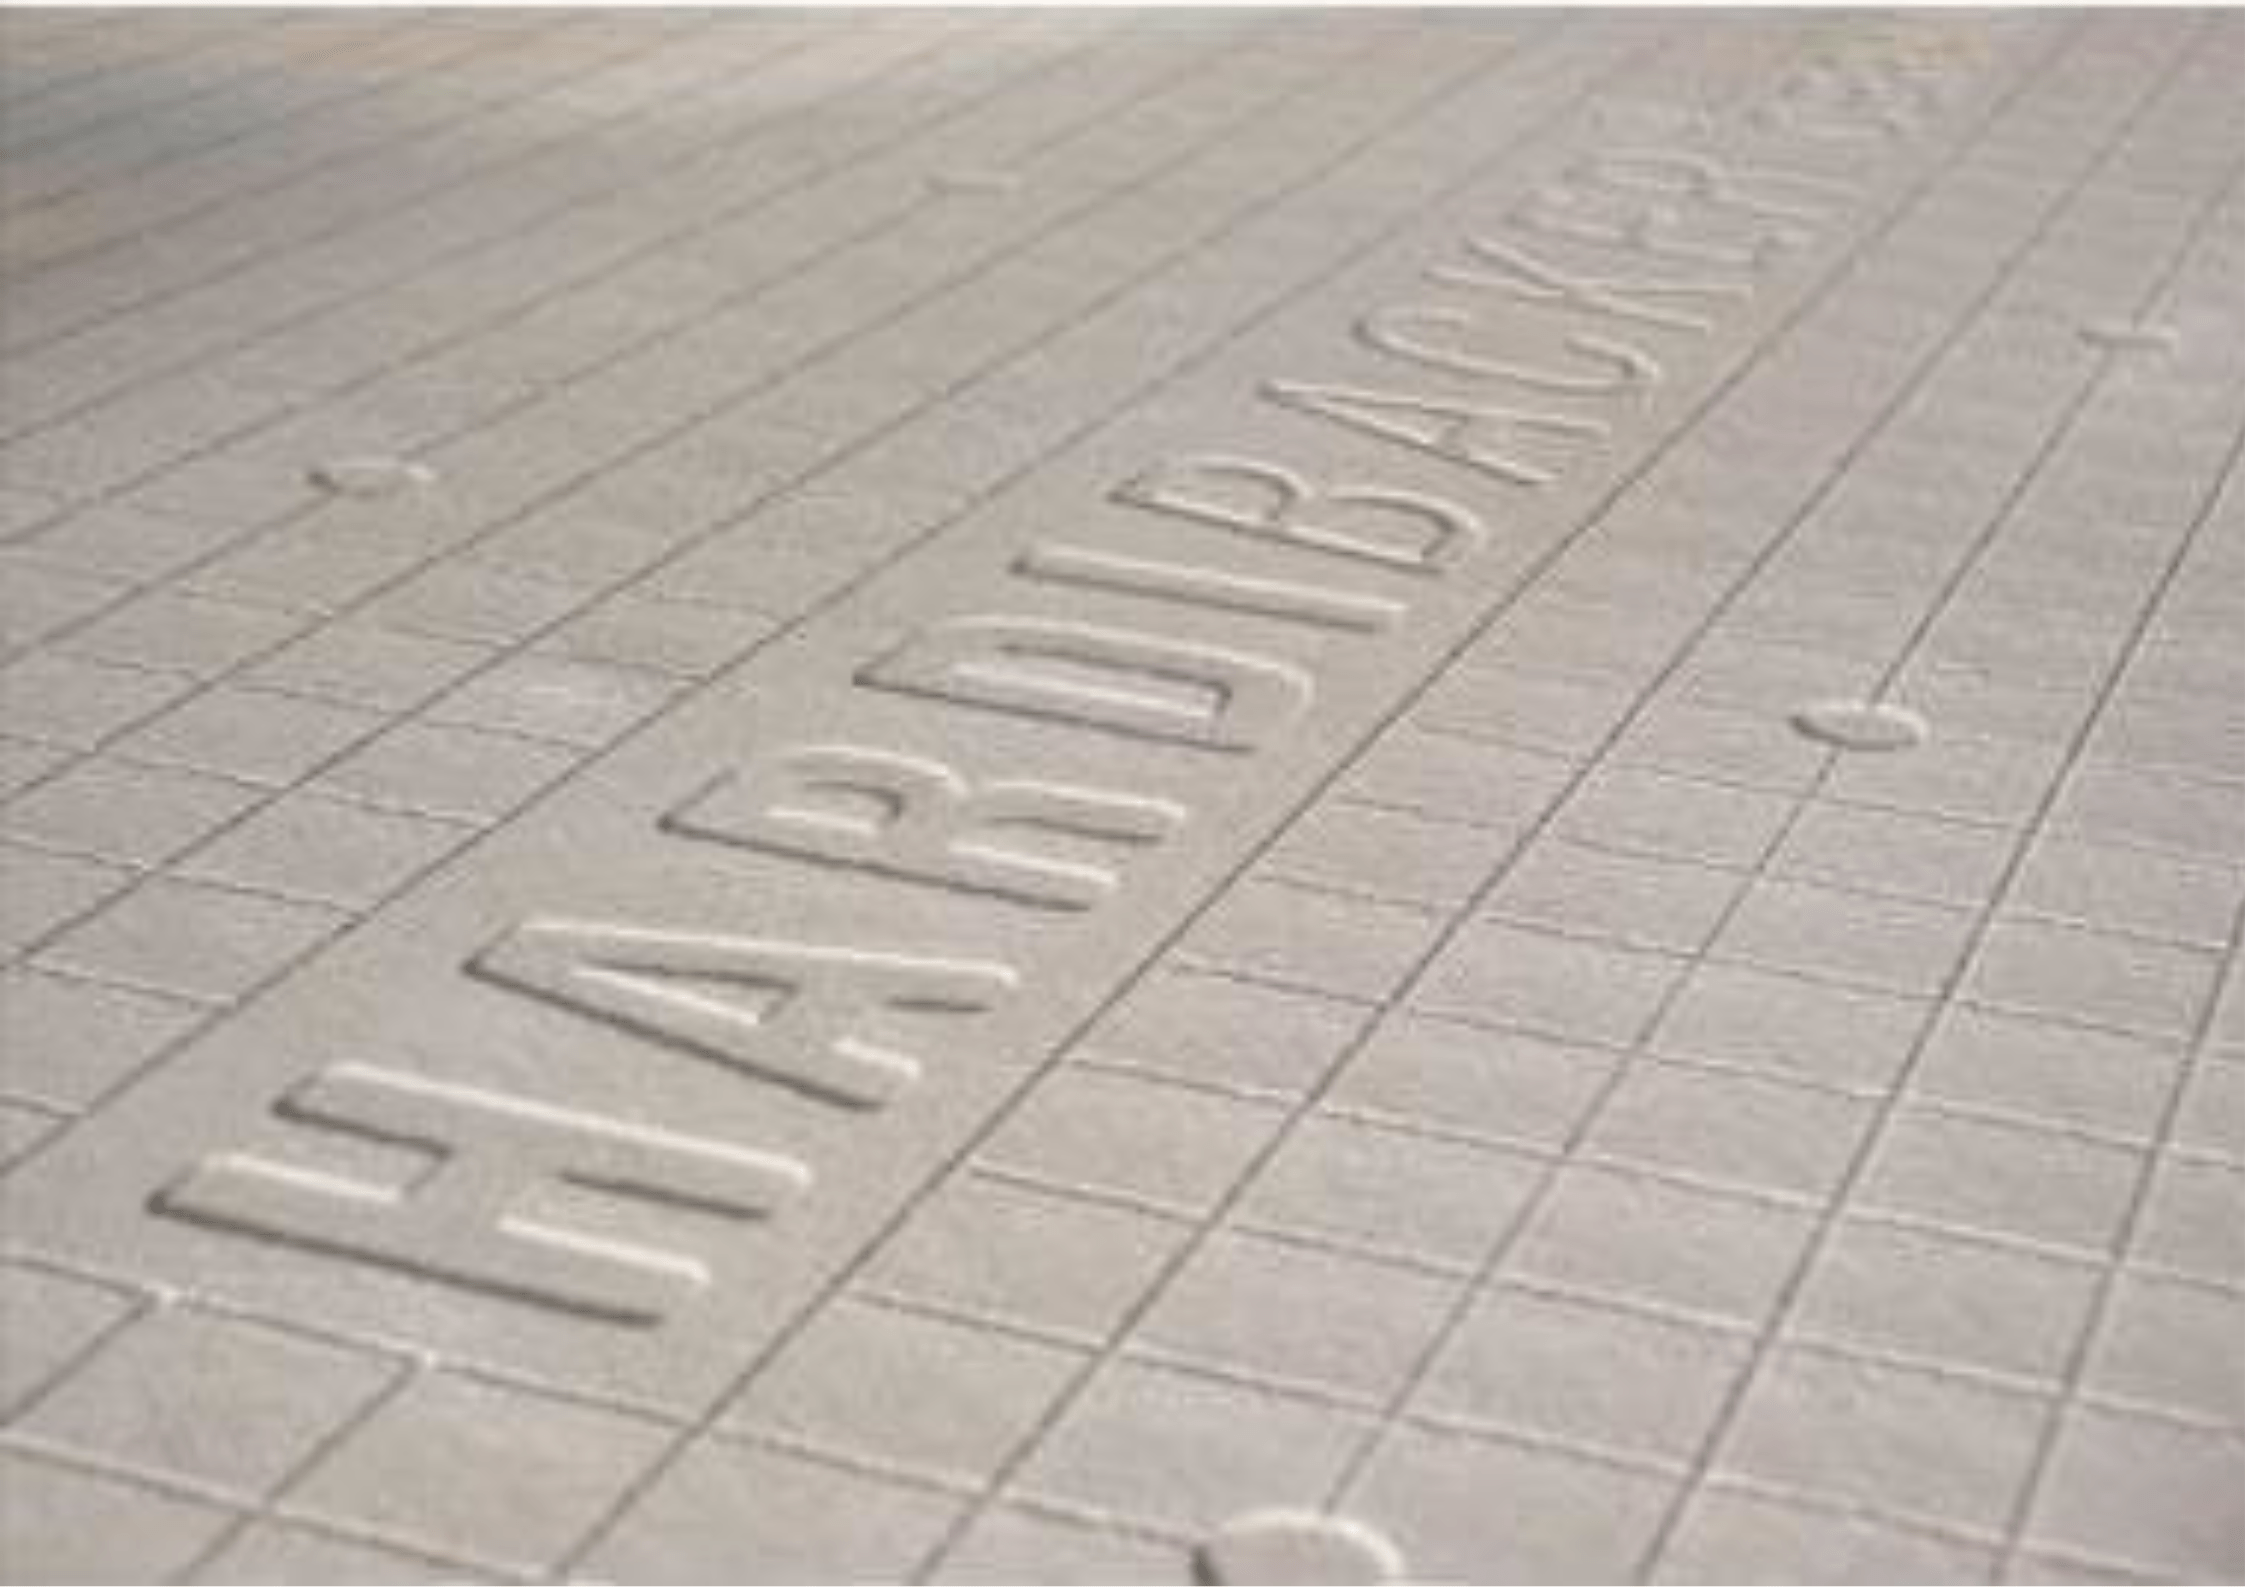 James Hardie Hardie® Backer Tile Backerboard 1200mm x 800mm x 6mm - Pallet of 90 IUK01642 Hardie® Backer Tile Backerboard 1200mm x 800mm x 6mm - Pallet of 90 | insulationuk.co.uk